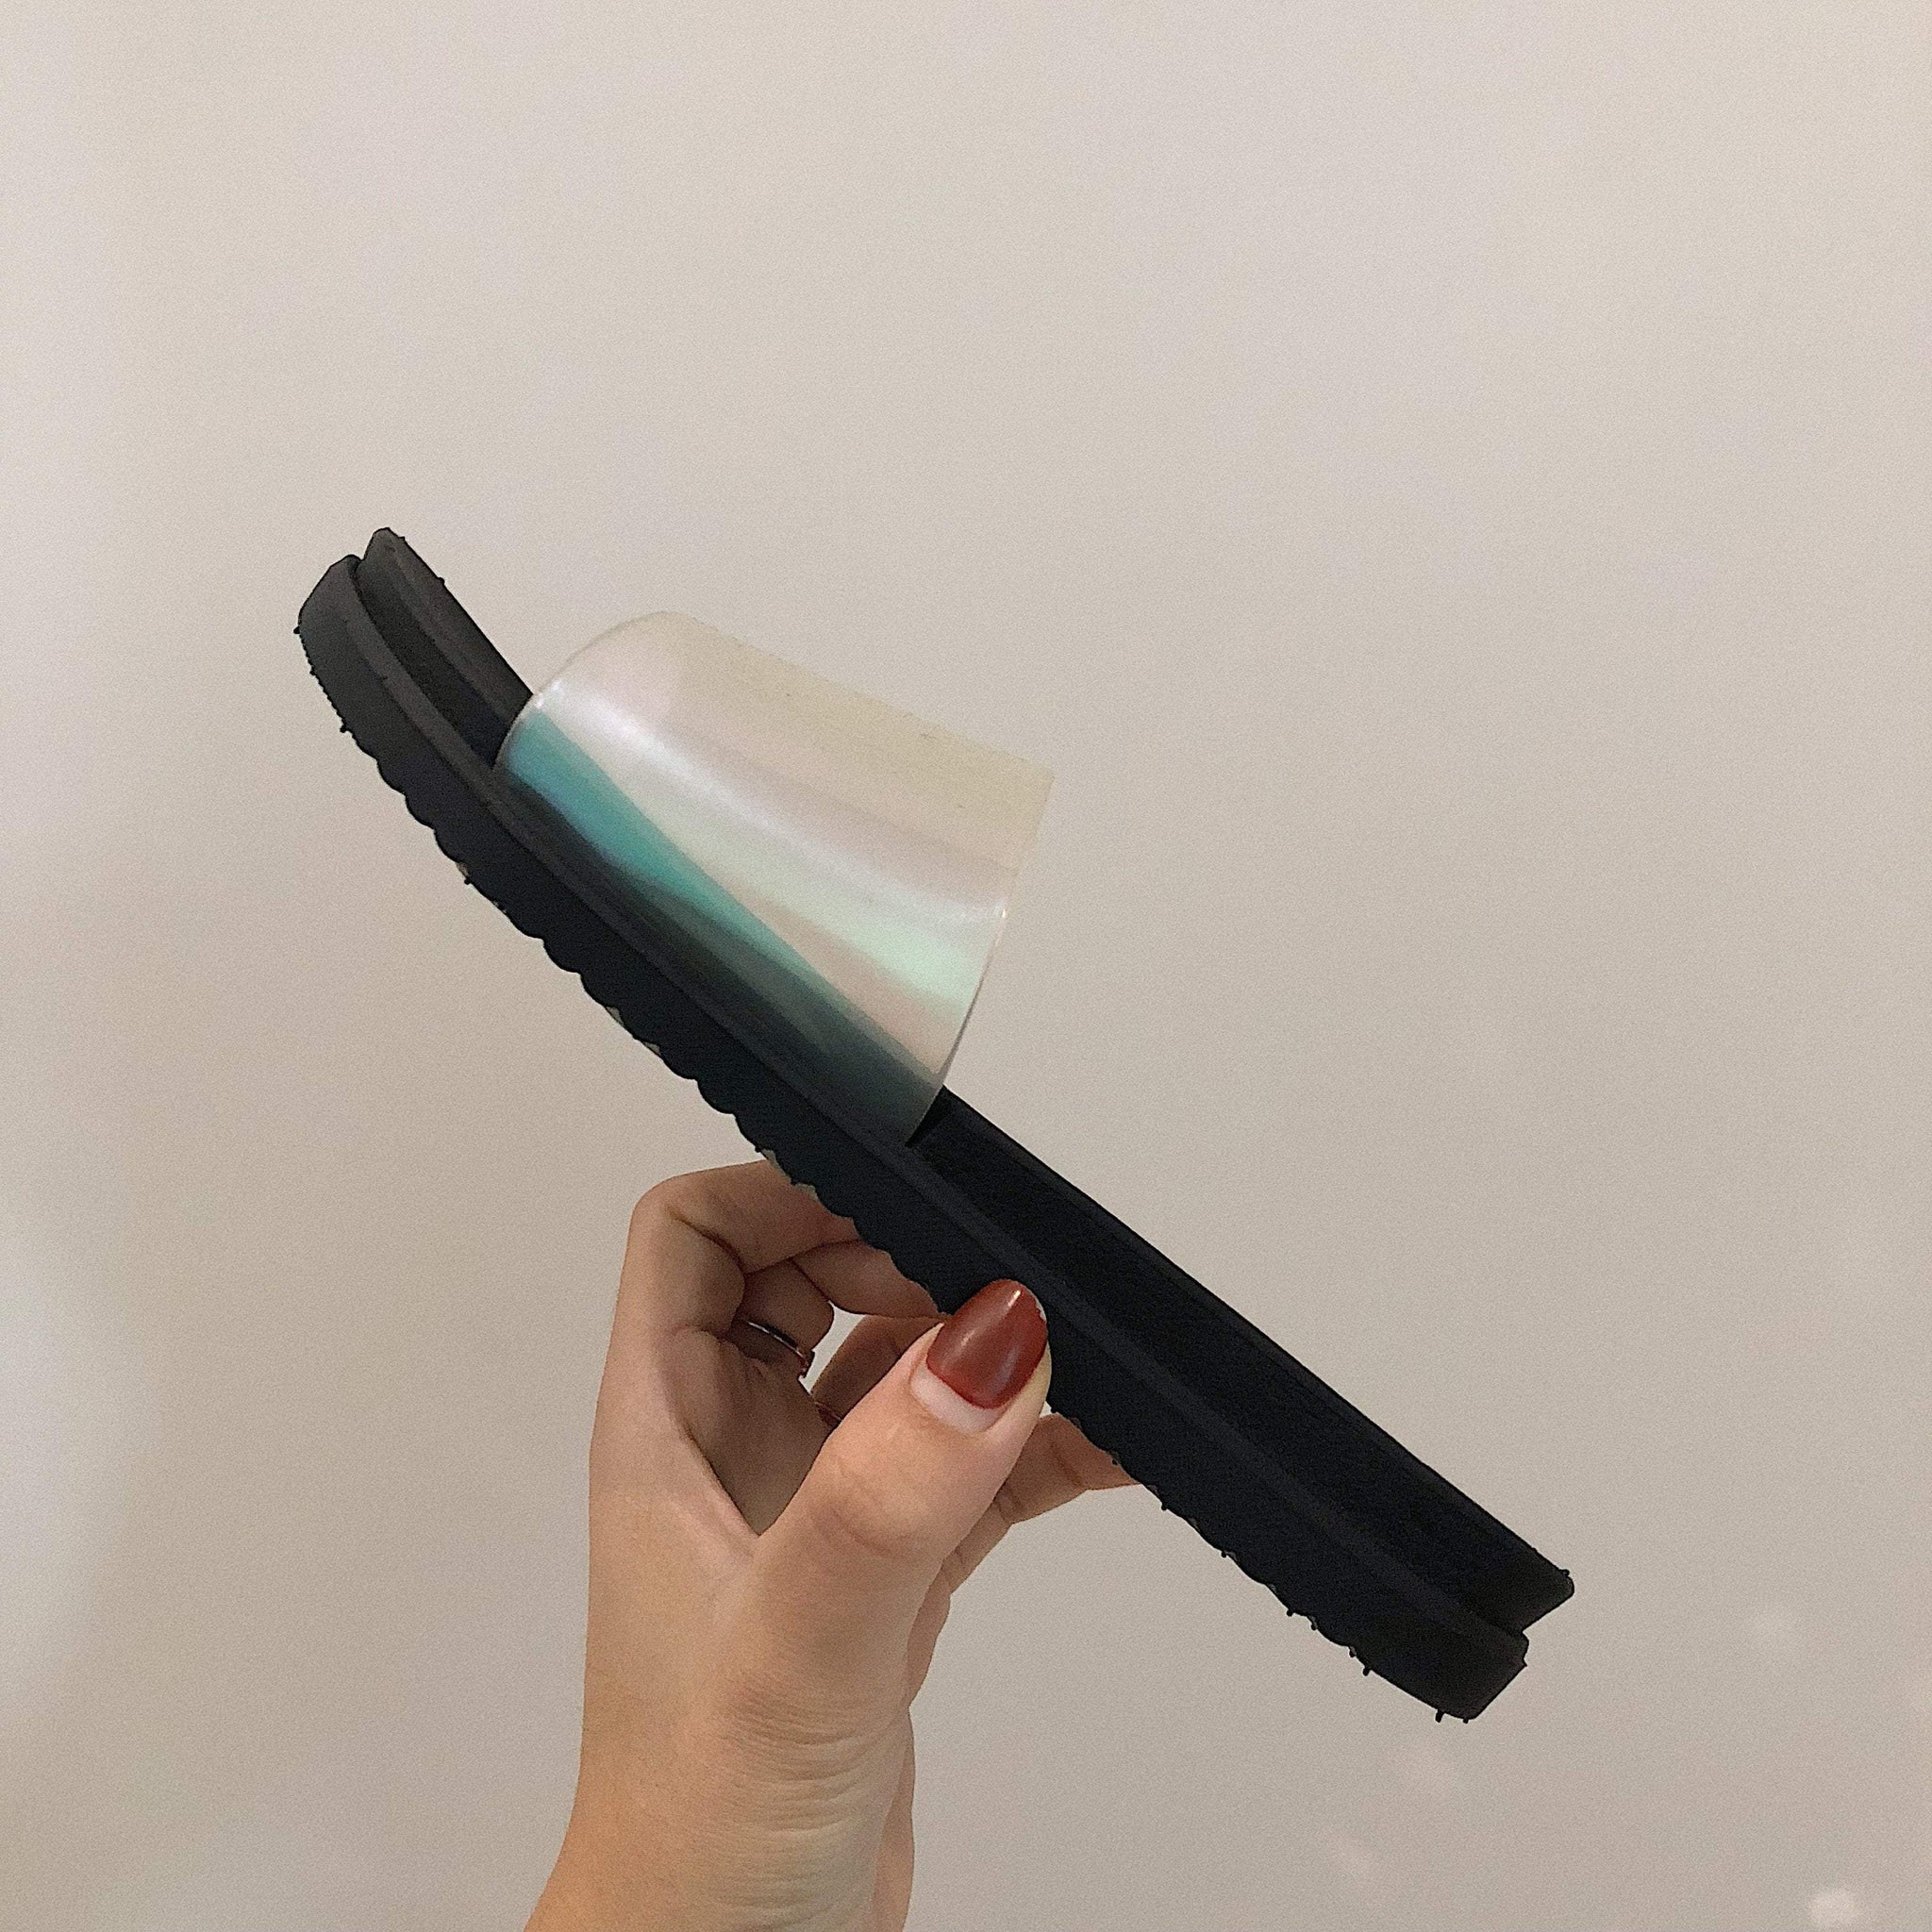 Holographic Aesthetic Rubber Slipper Black White Sandals